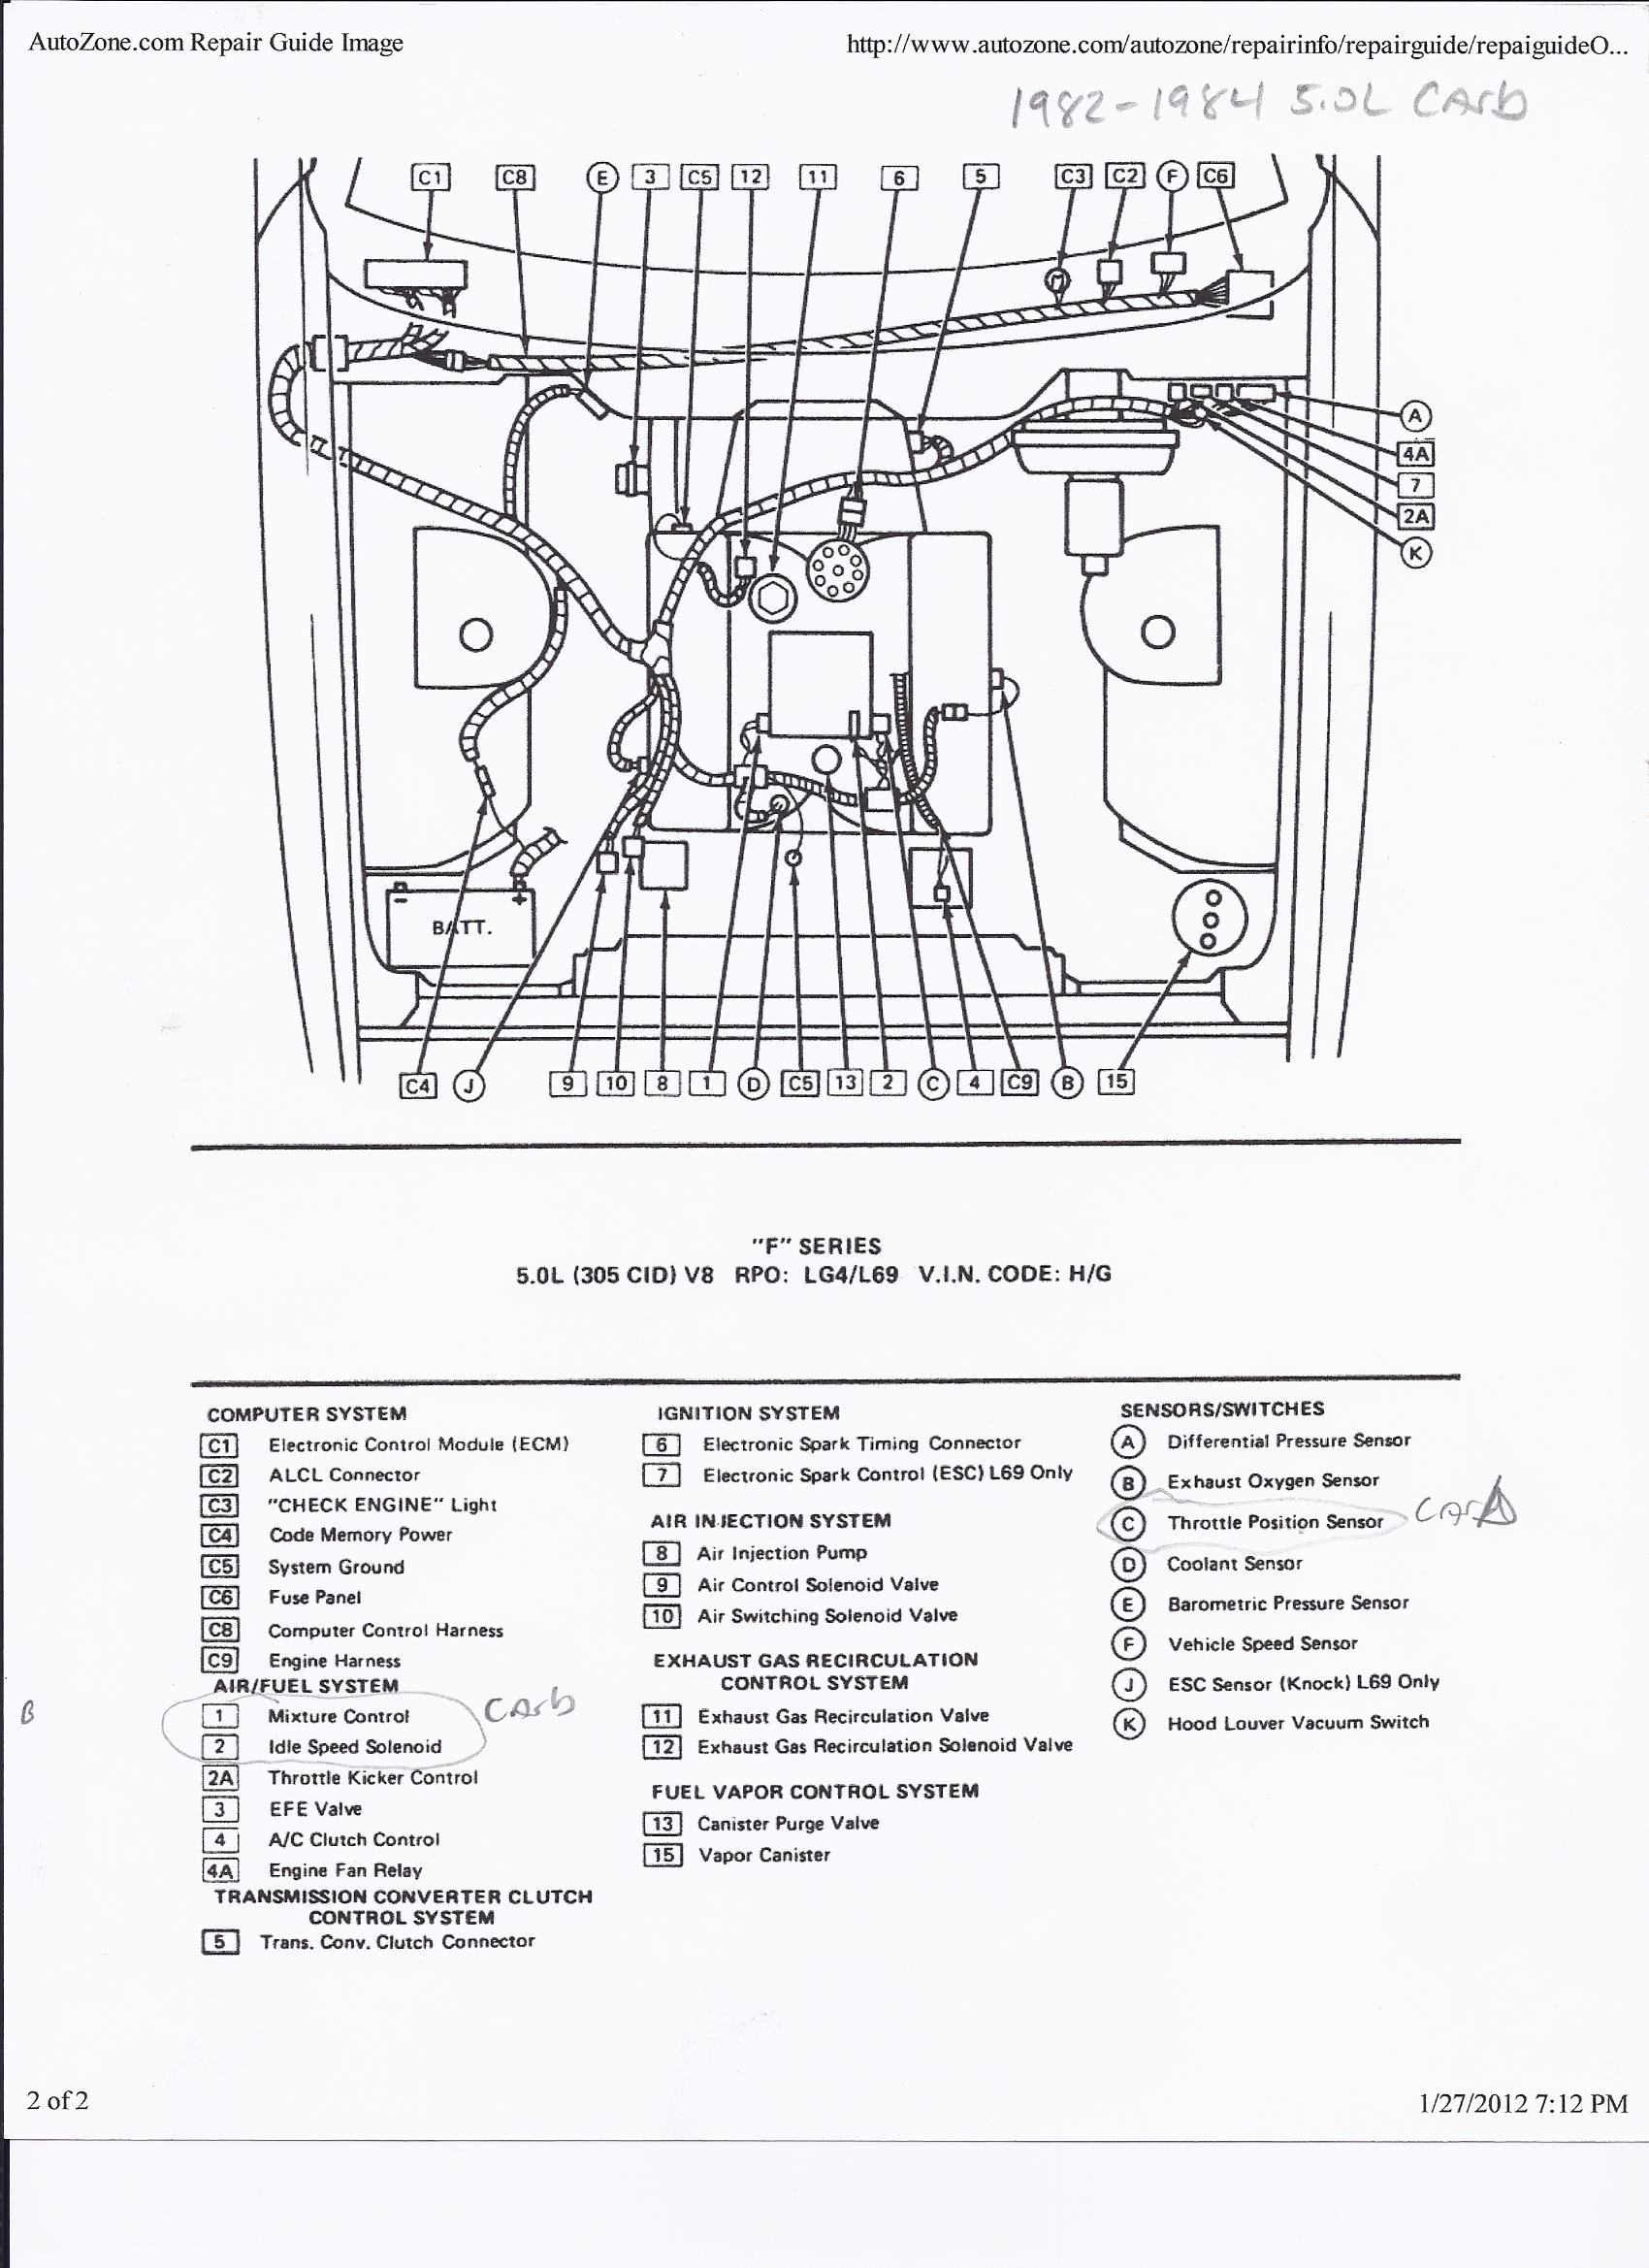 Carburetor Wiring Diagram - 25